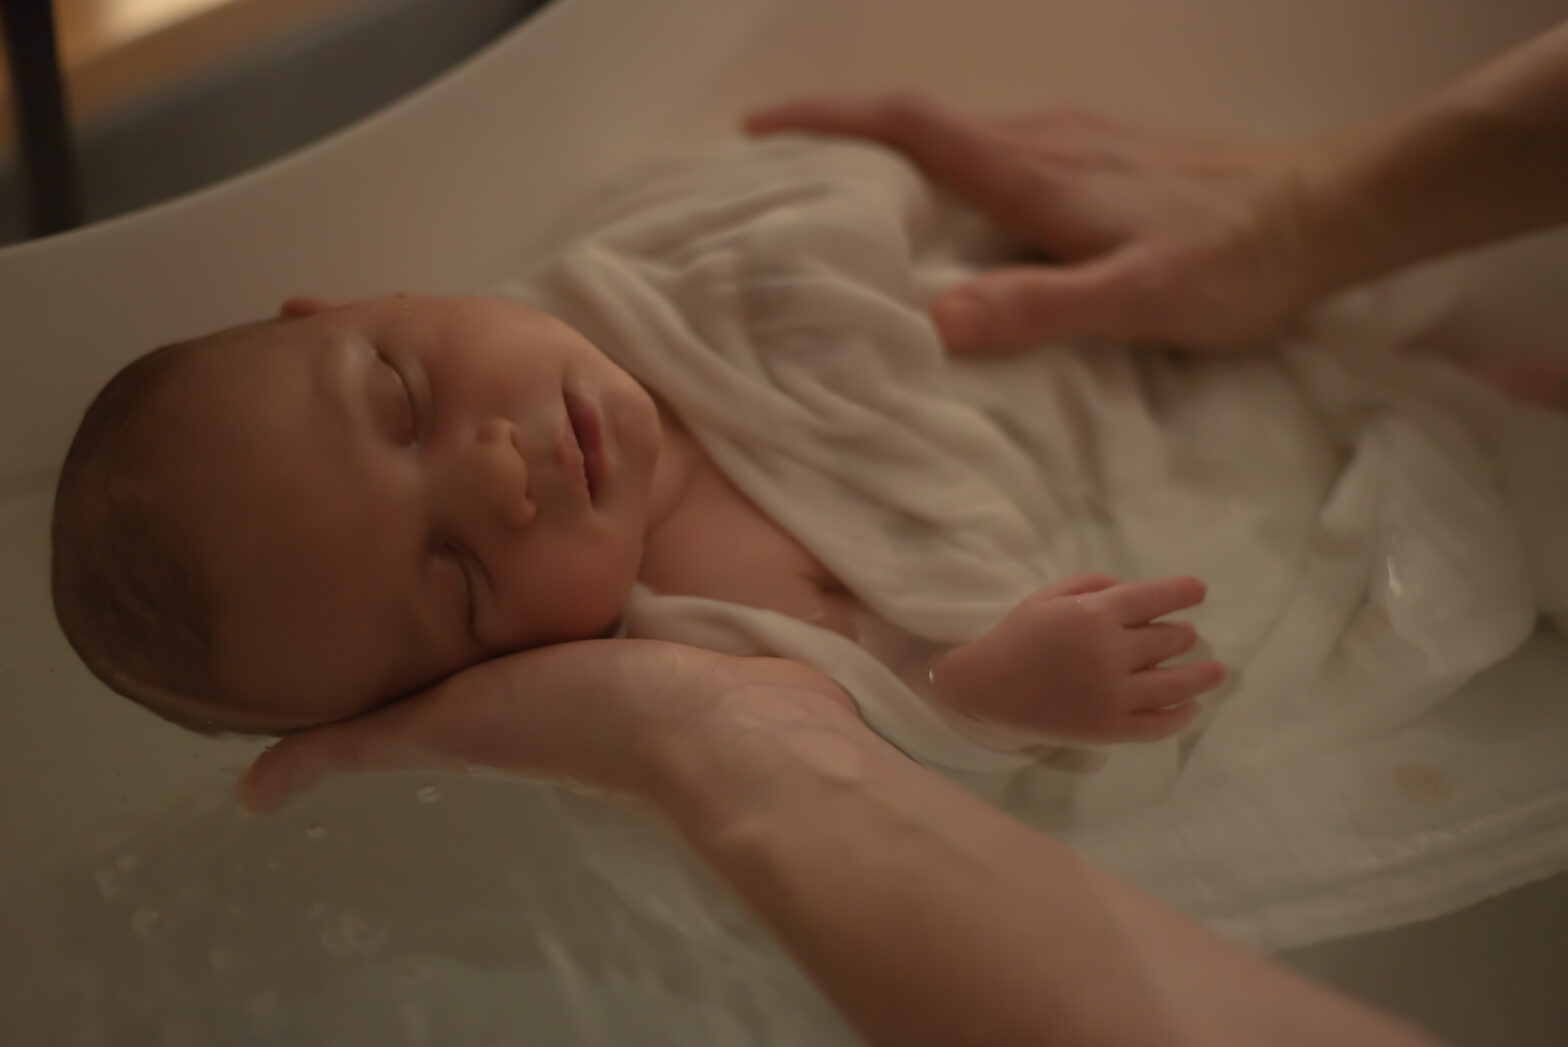 Thérapeutique bain bébé. Virginie Azeau Salomé photographie